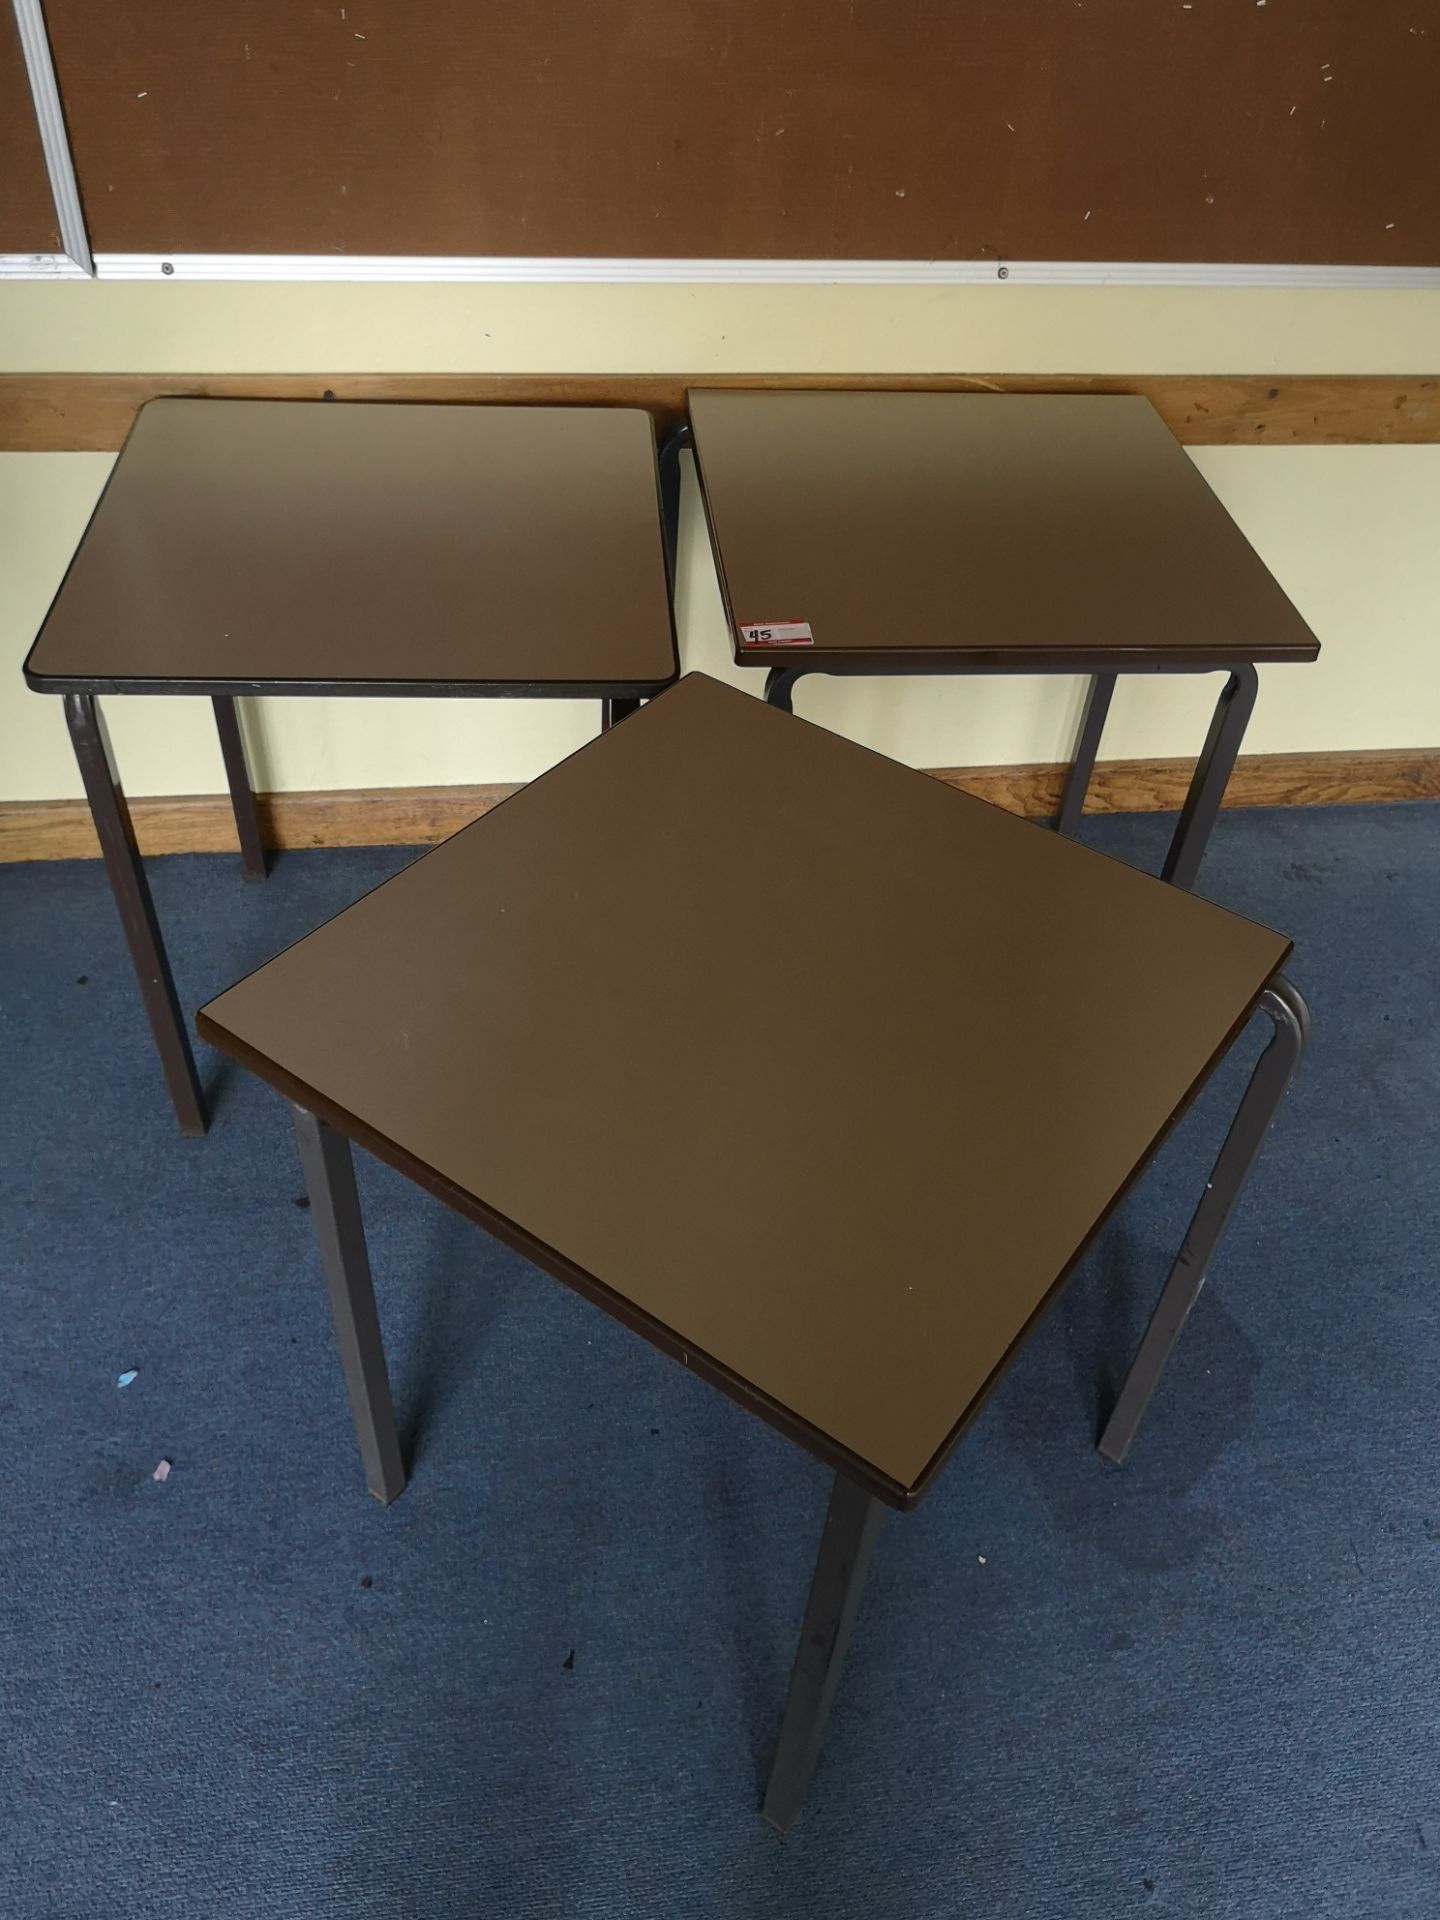 3x 60cm x 60cm vintage school desks